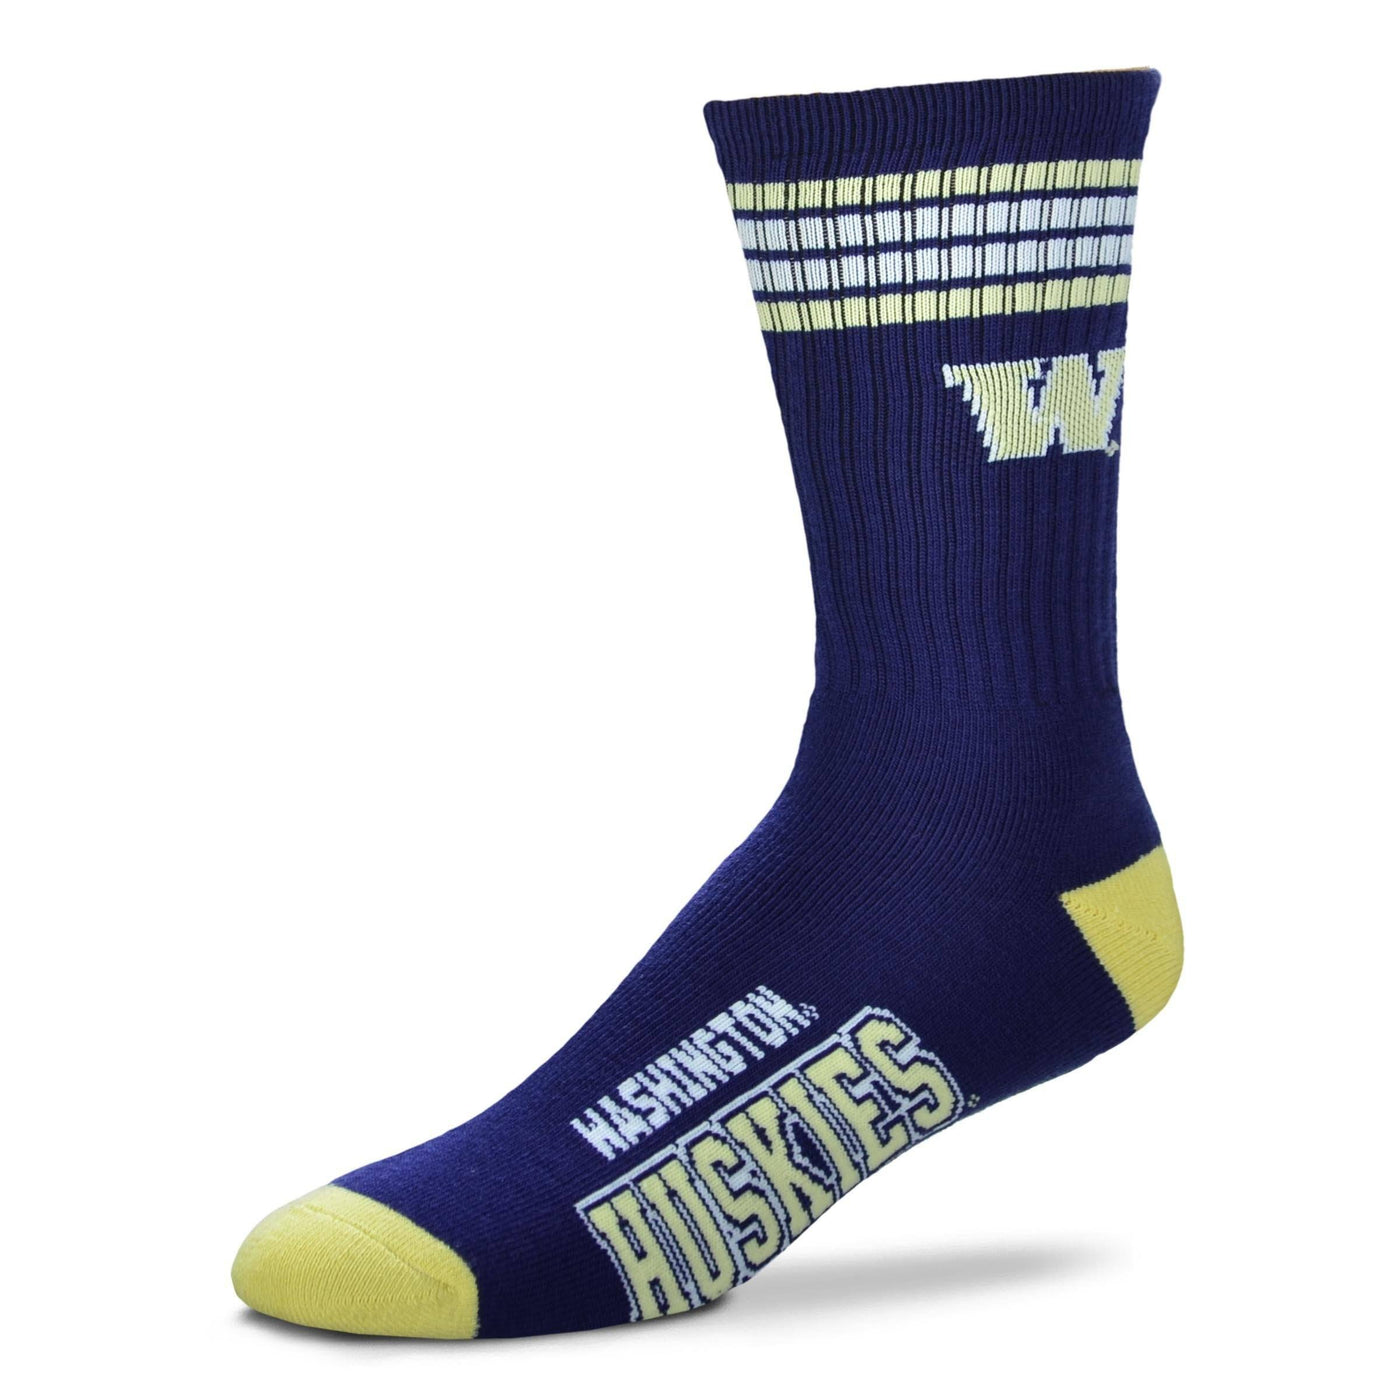 For Bare Feet - University of Washington Huskies Crew Socks | Men's - Knock Your Socks Off